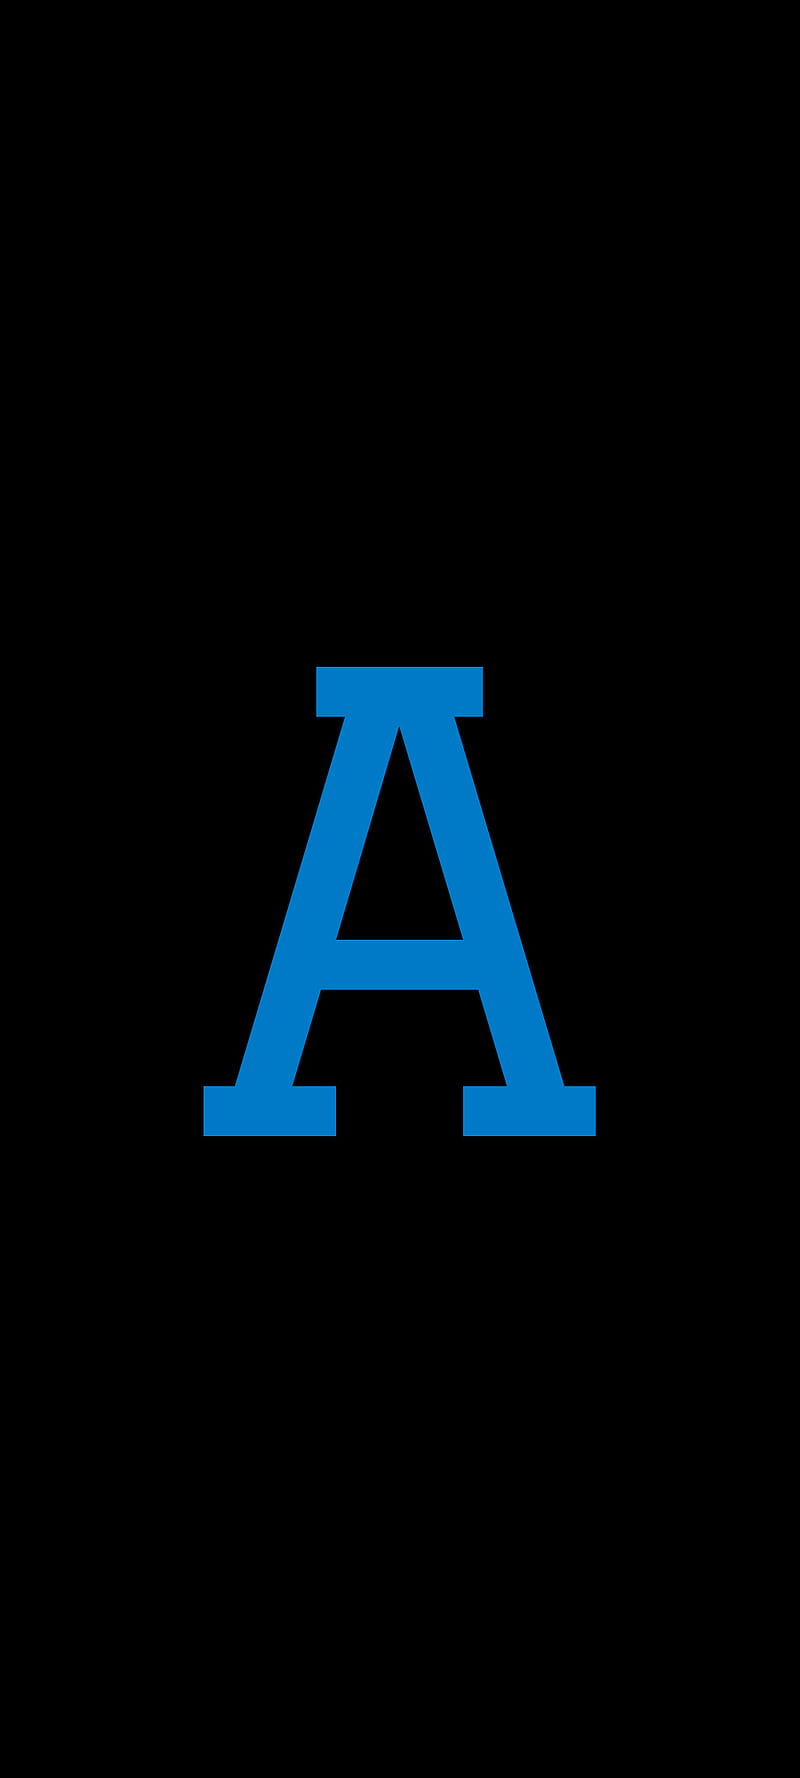 A , alphabet, s20, samsung, ultra, HD phone wallpaper